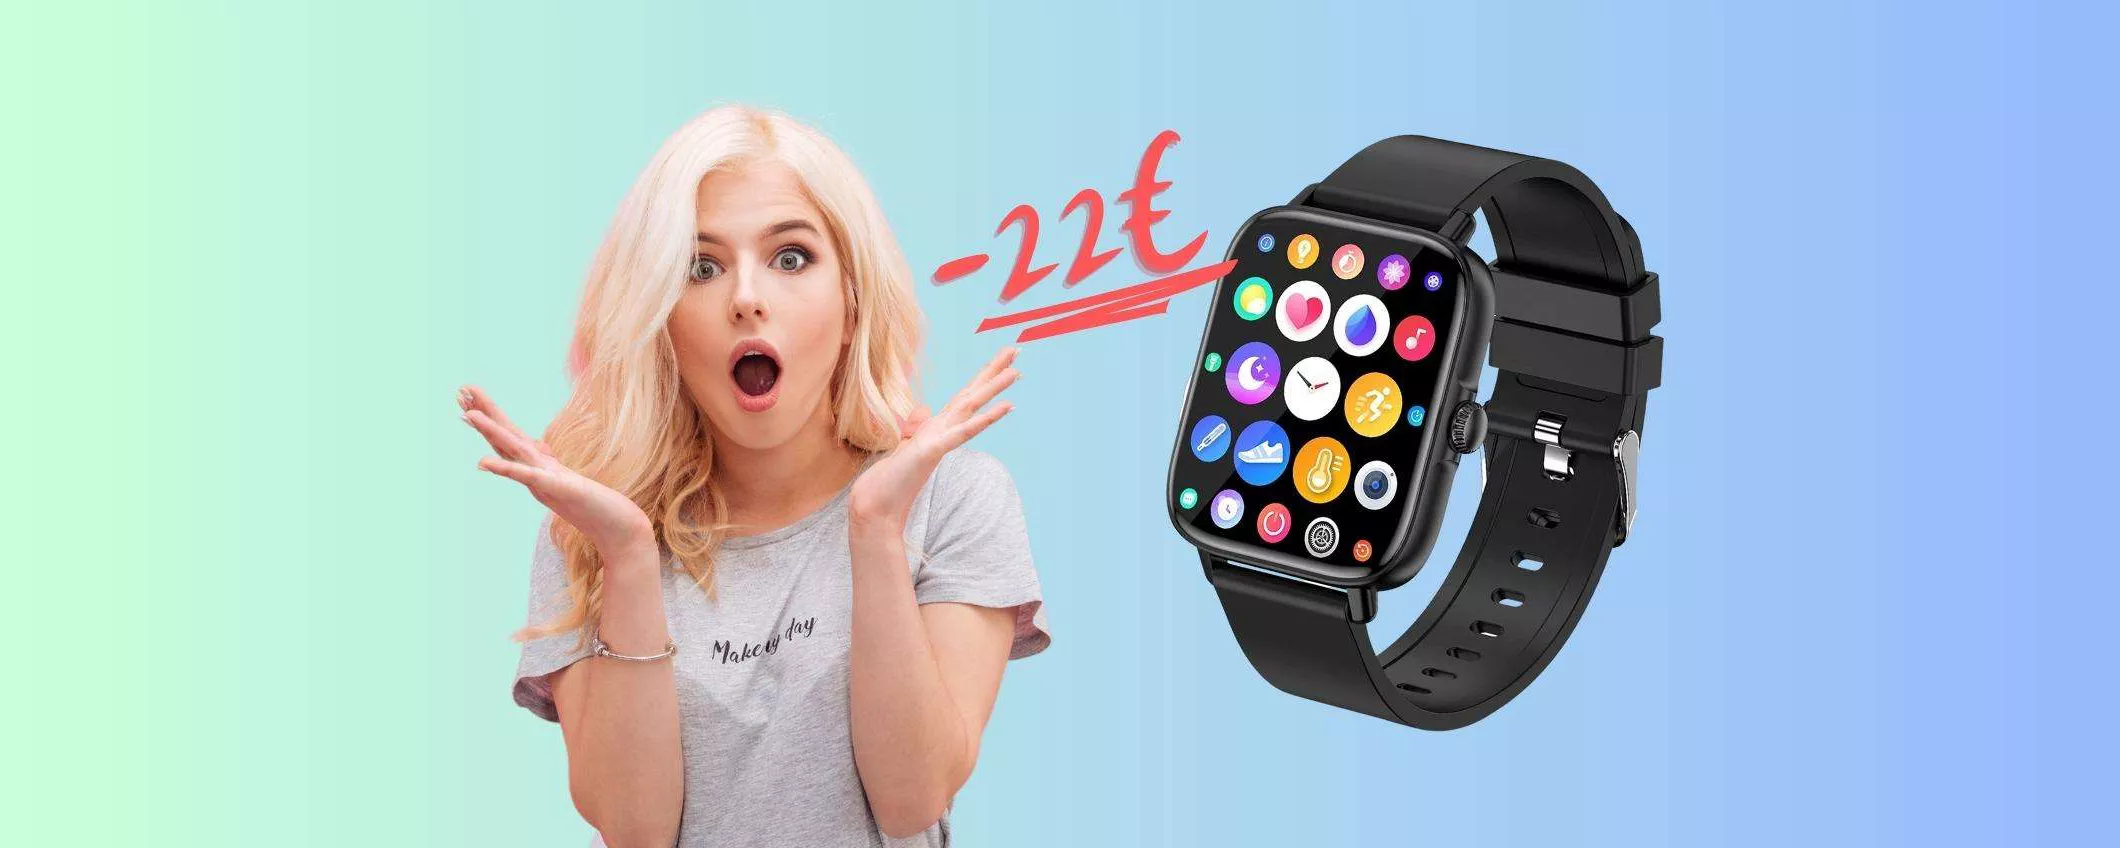 Solo 22€ e ti metti al polso uno smartwatch che risponde alle chiamate